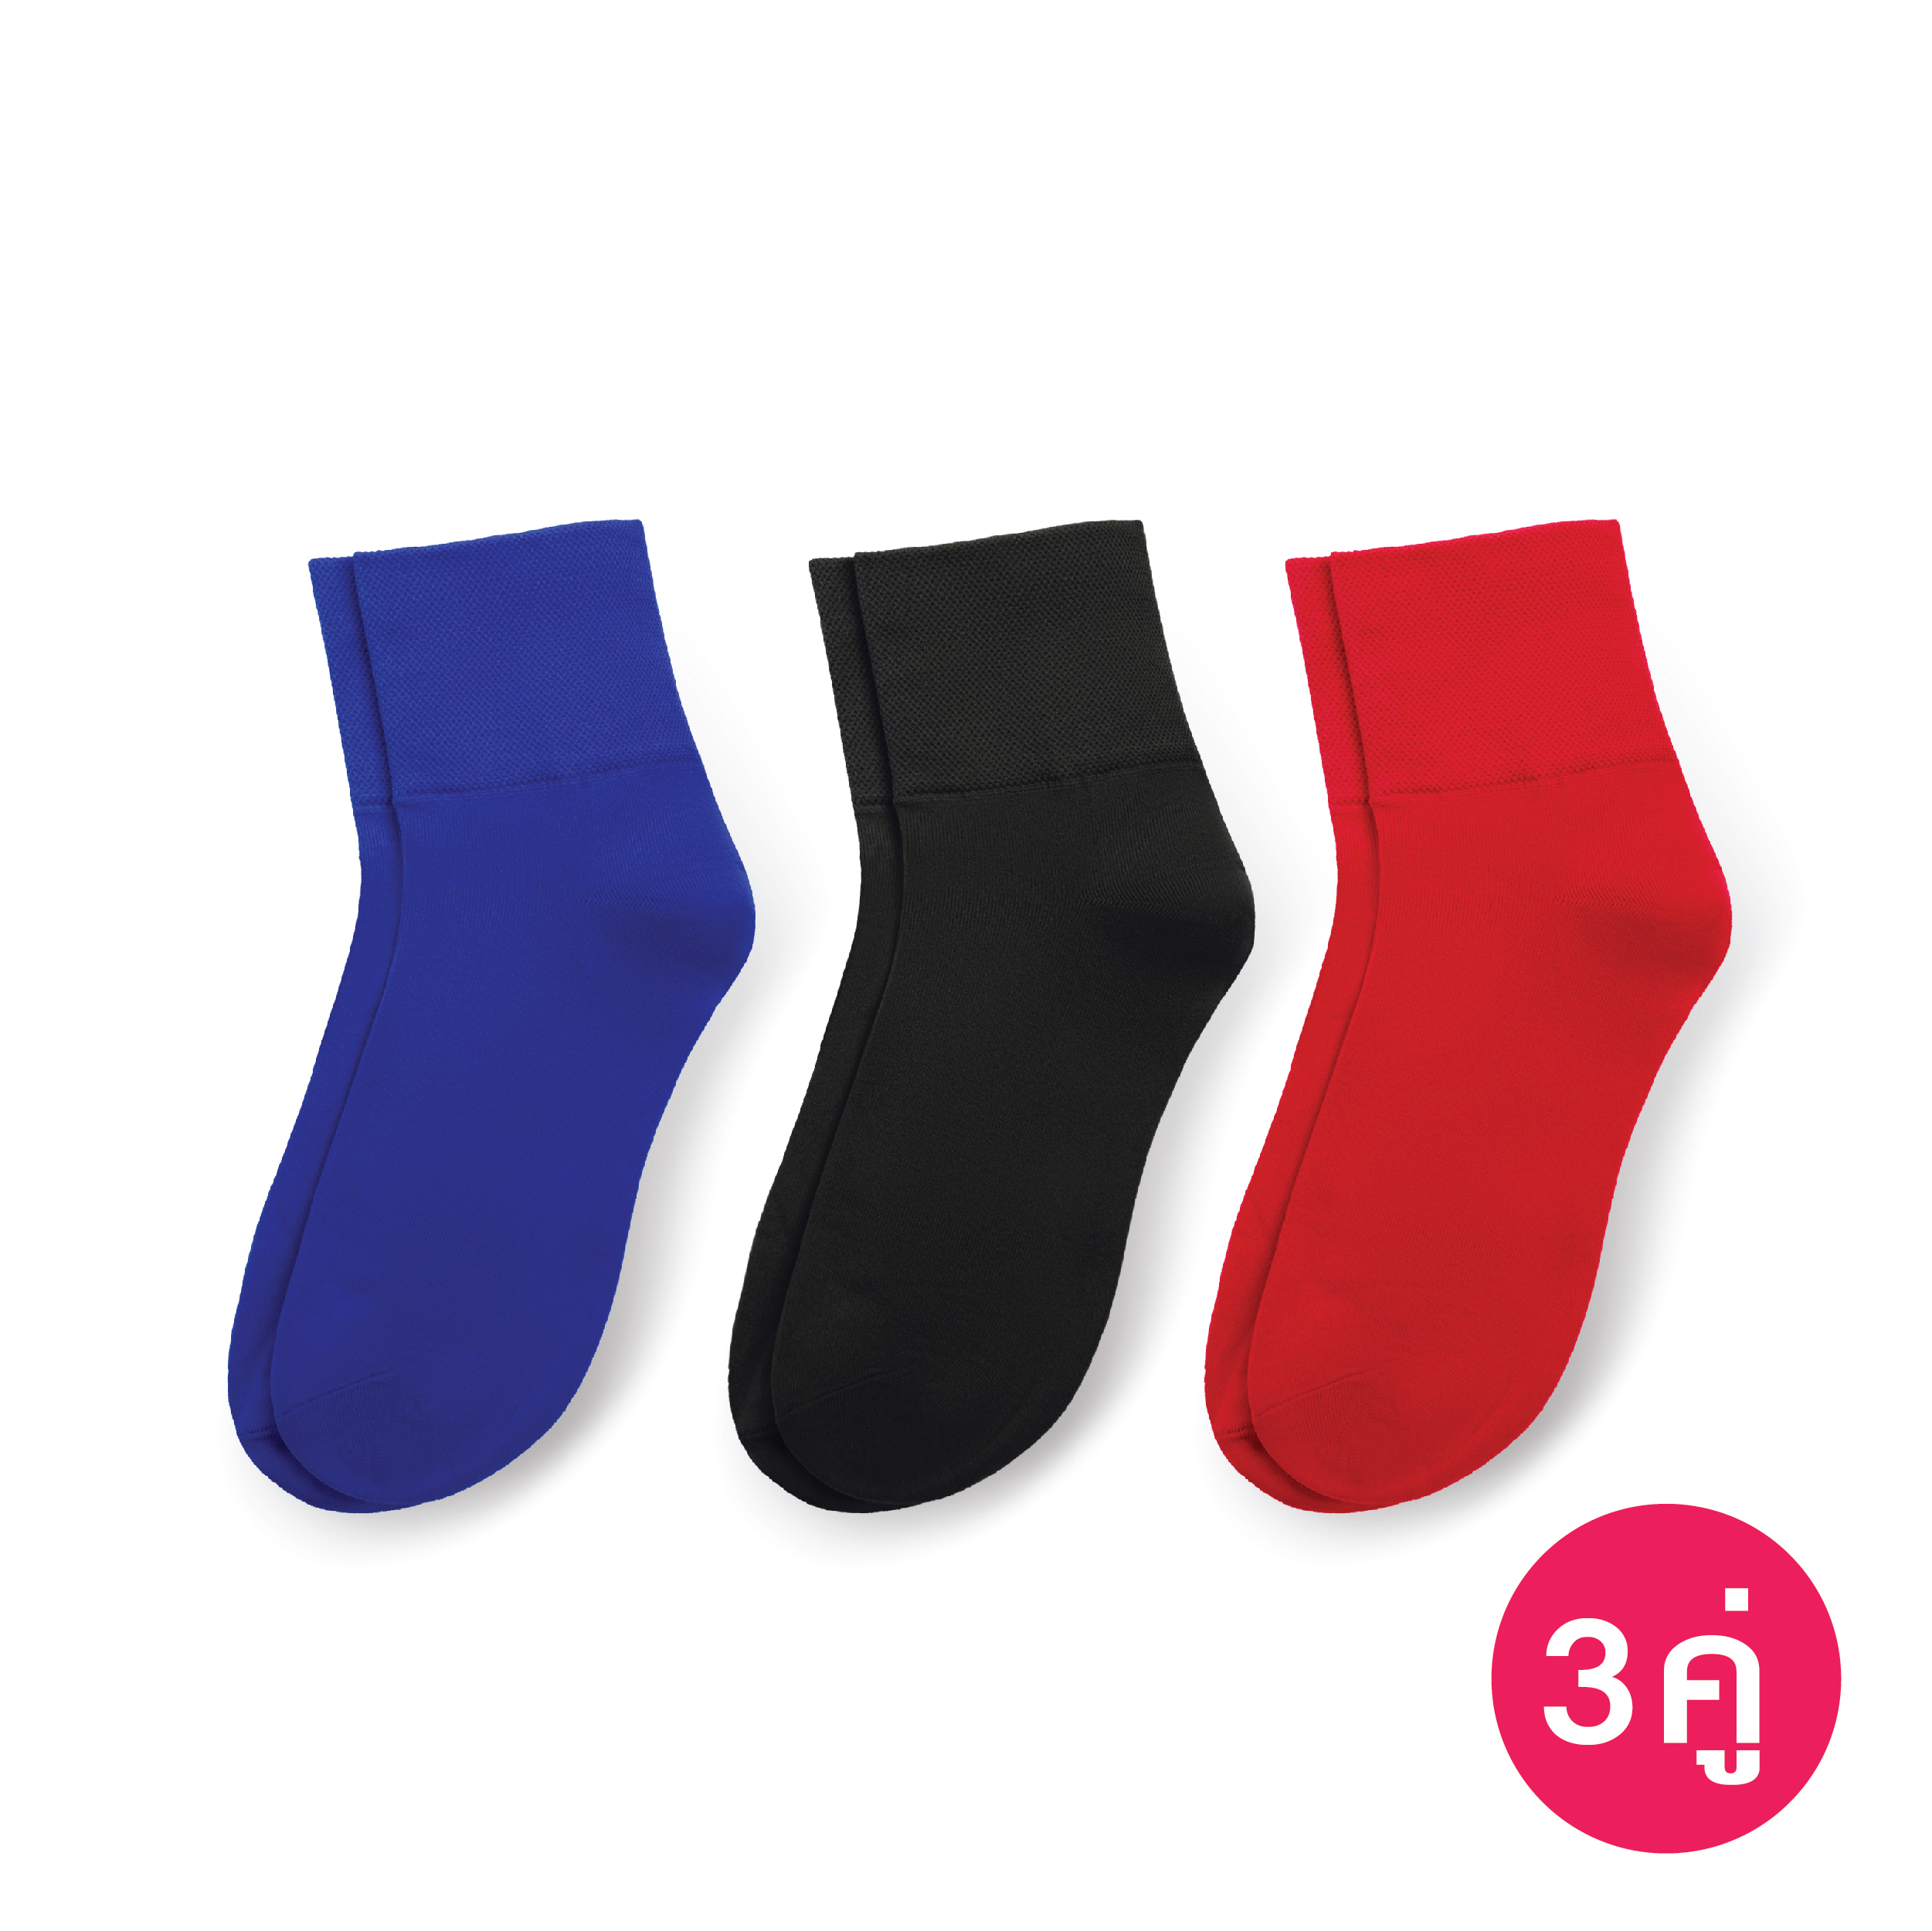 [ซื้อ Set คุ้มกว่า] ถุงเท้าทอขอบหนา สีฟ้าคราม, สีดำ, สีแดง รหัส NESOAH